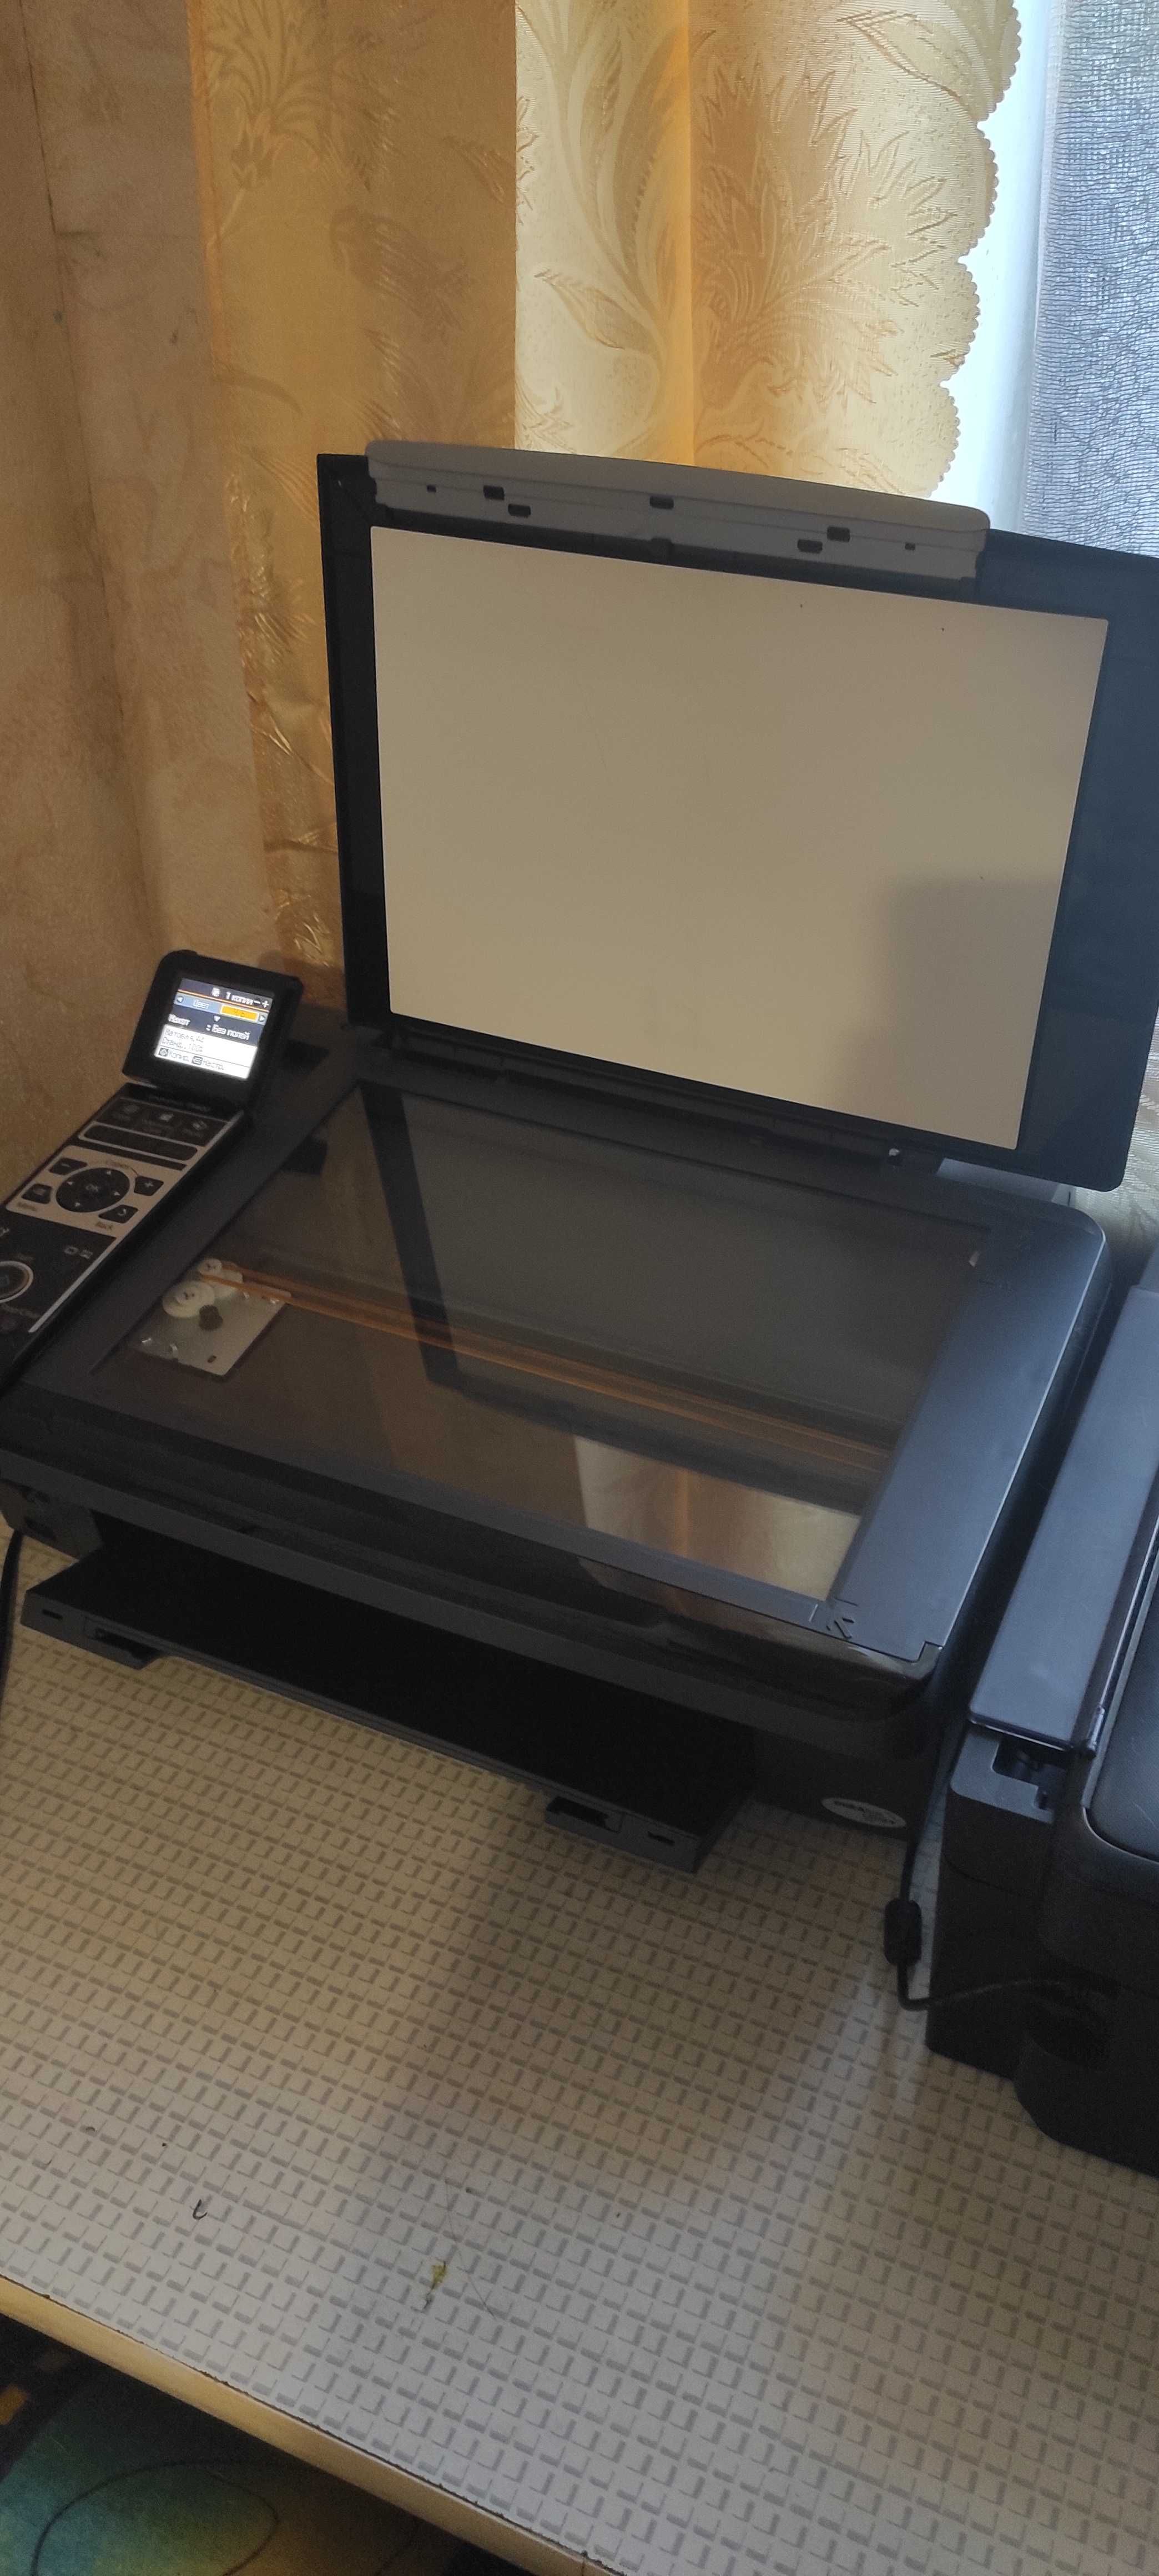 Принтер Epson TX400 в робочому стані